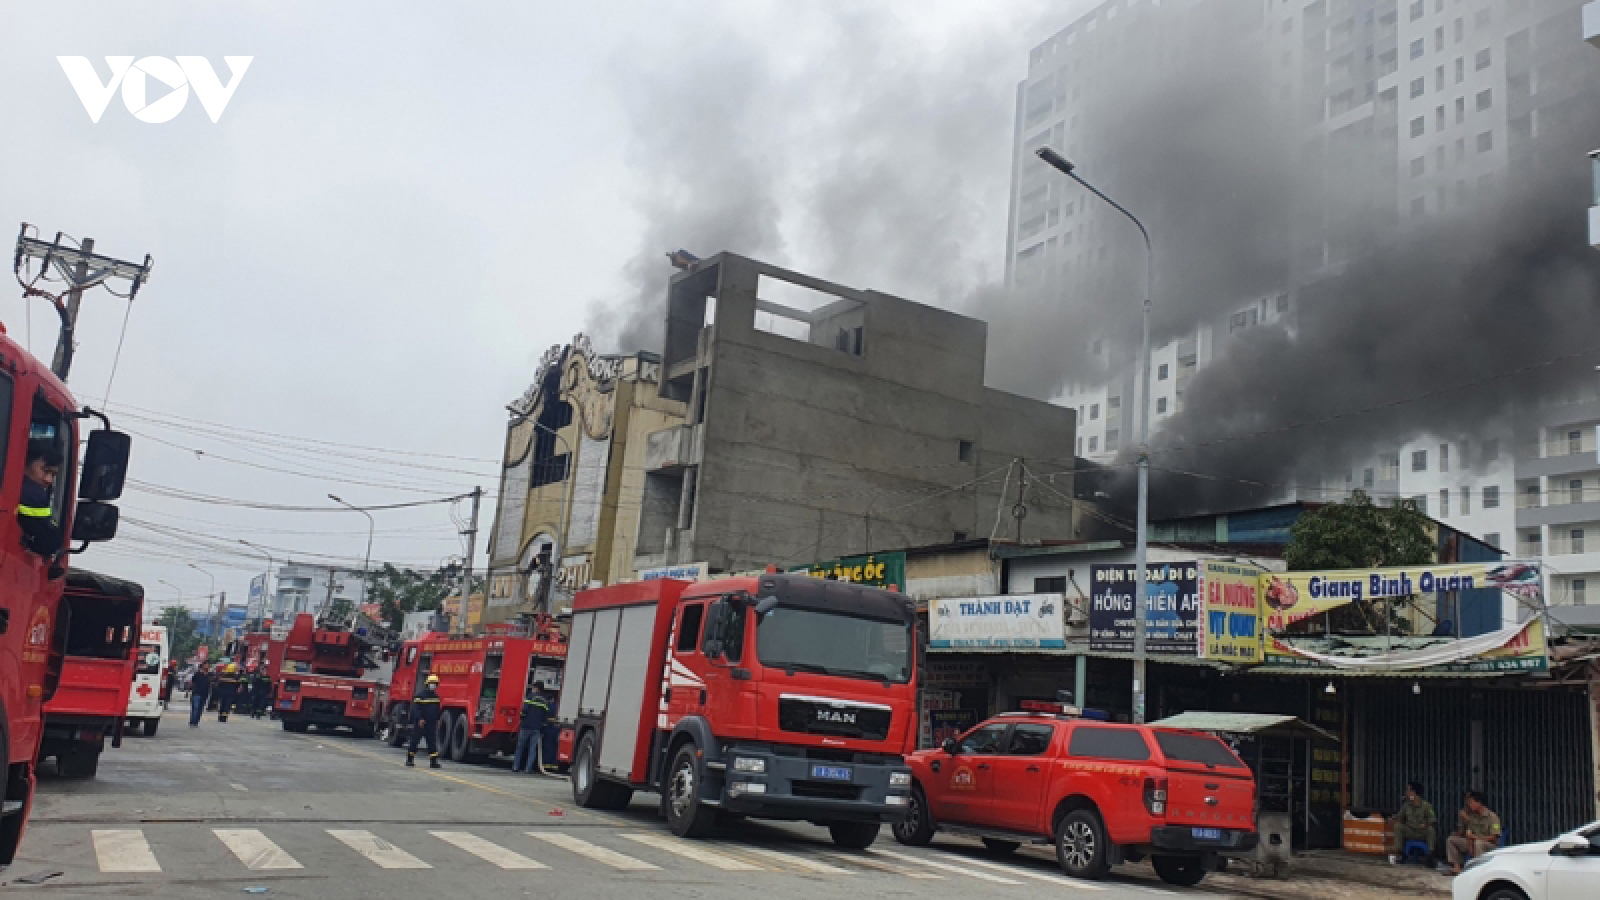 Hà Nội: Người đứng đầu cấp uỷ chịu trách nhiệm nếu xảy ra cháy nổ nghiêm trọng